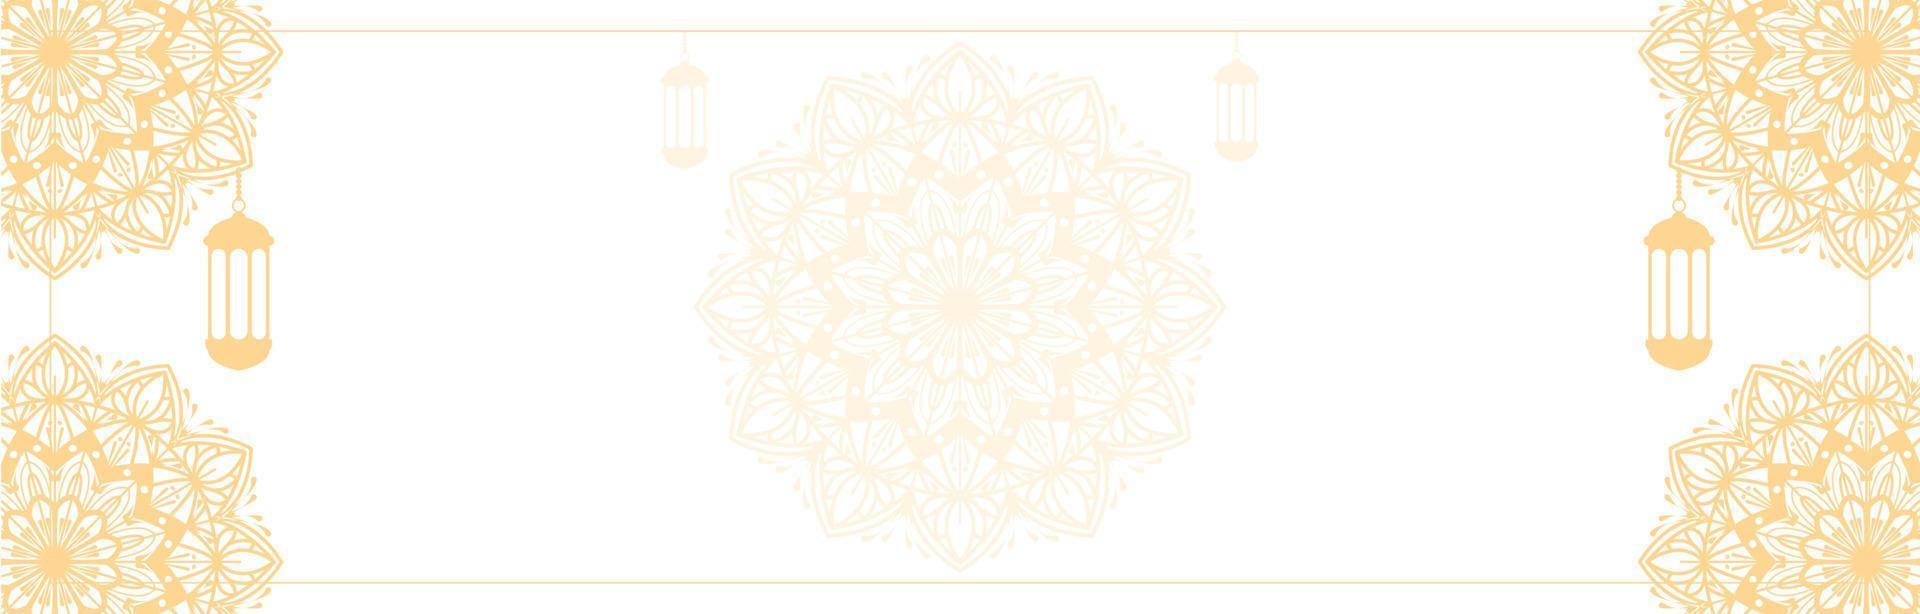 islamisk bakgrundsvektorgrafik med arabiska mandala etniska element för eid, ramadan kareem, muharram eller eid mubarak banners vektor